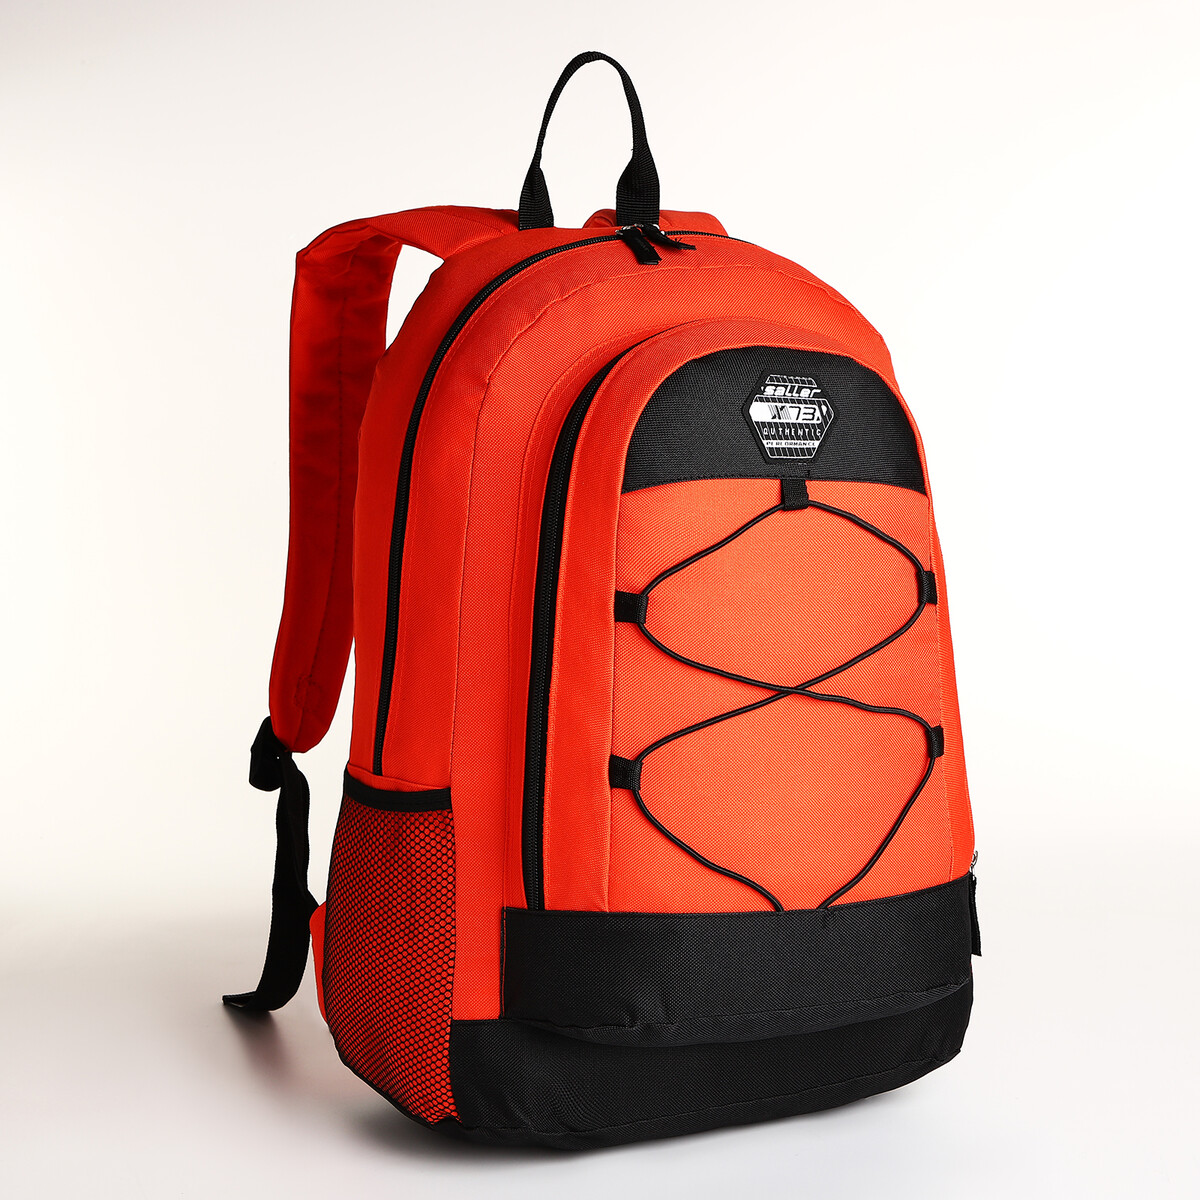 Рюкзак молодежный на молнии, 3 кармана, цвет оранжевый рюкзак молодежный из текстиля 2 отдела на молнии 3 кармана оранжевый